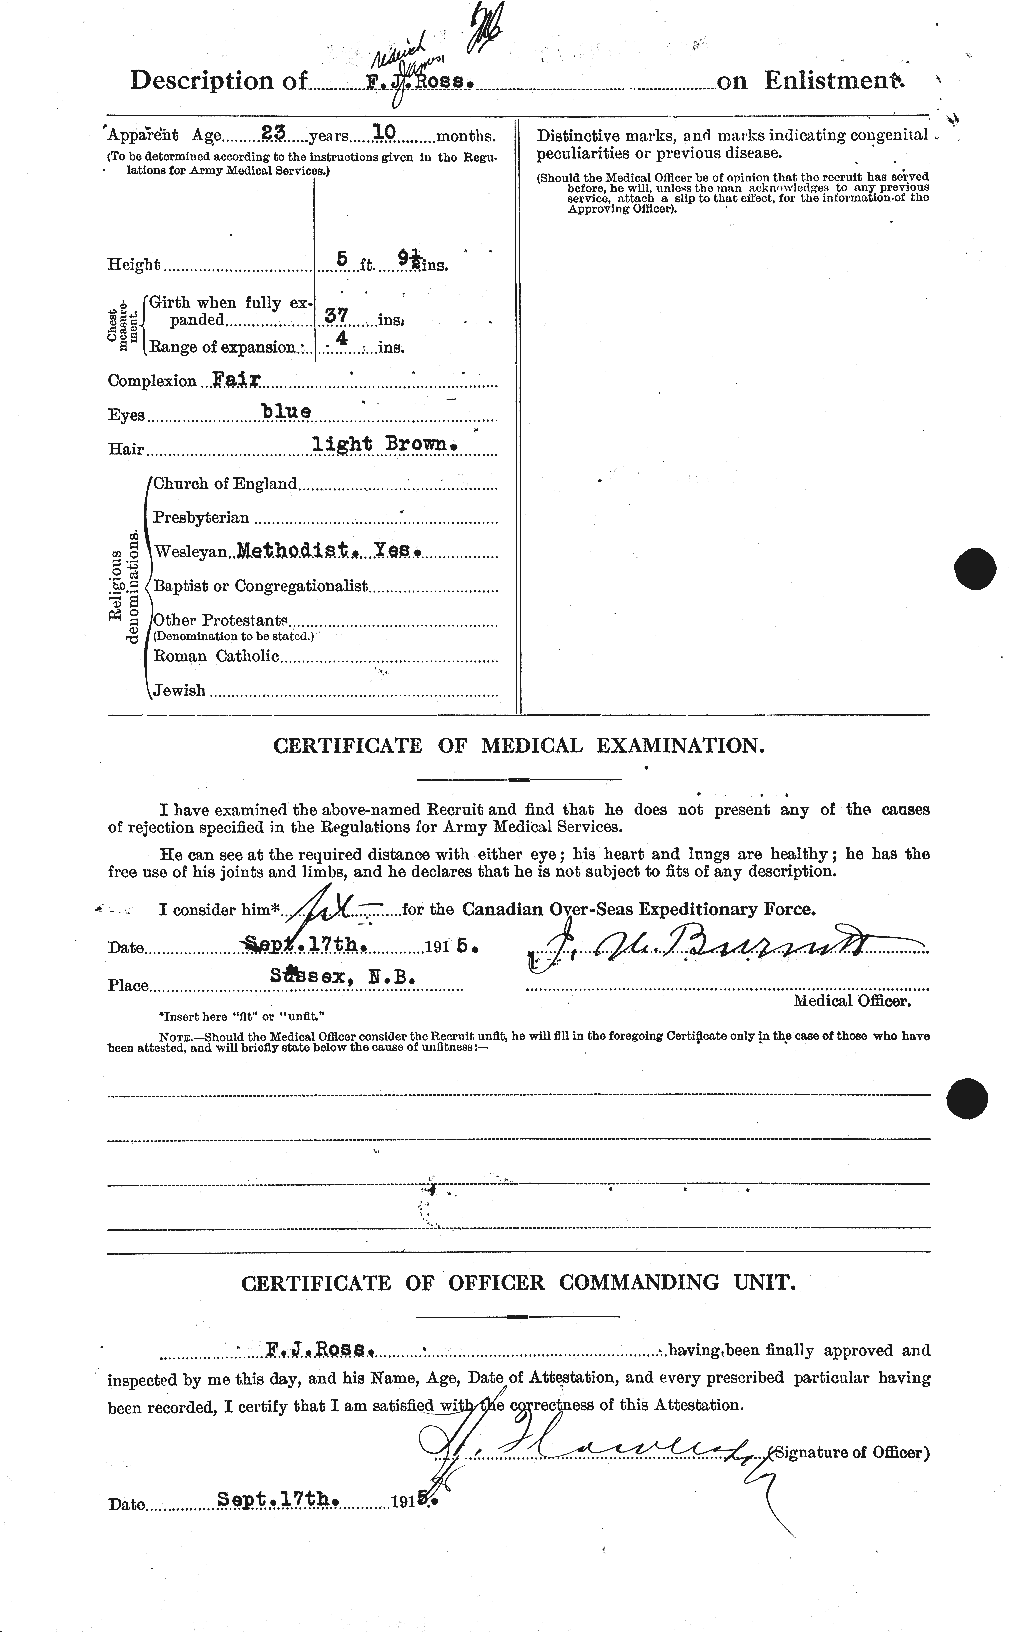 Dossiers du Personnel de la Première Guerre mondiale - CEC 613039b